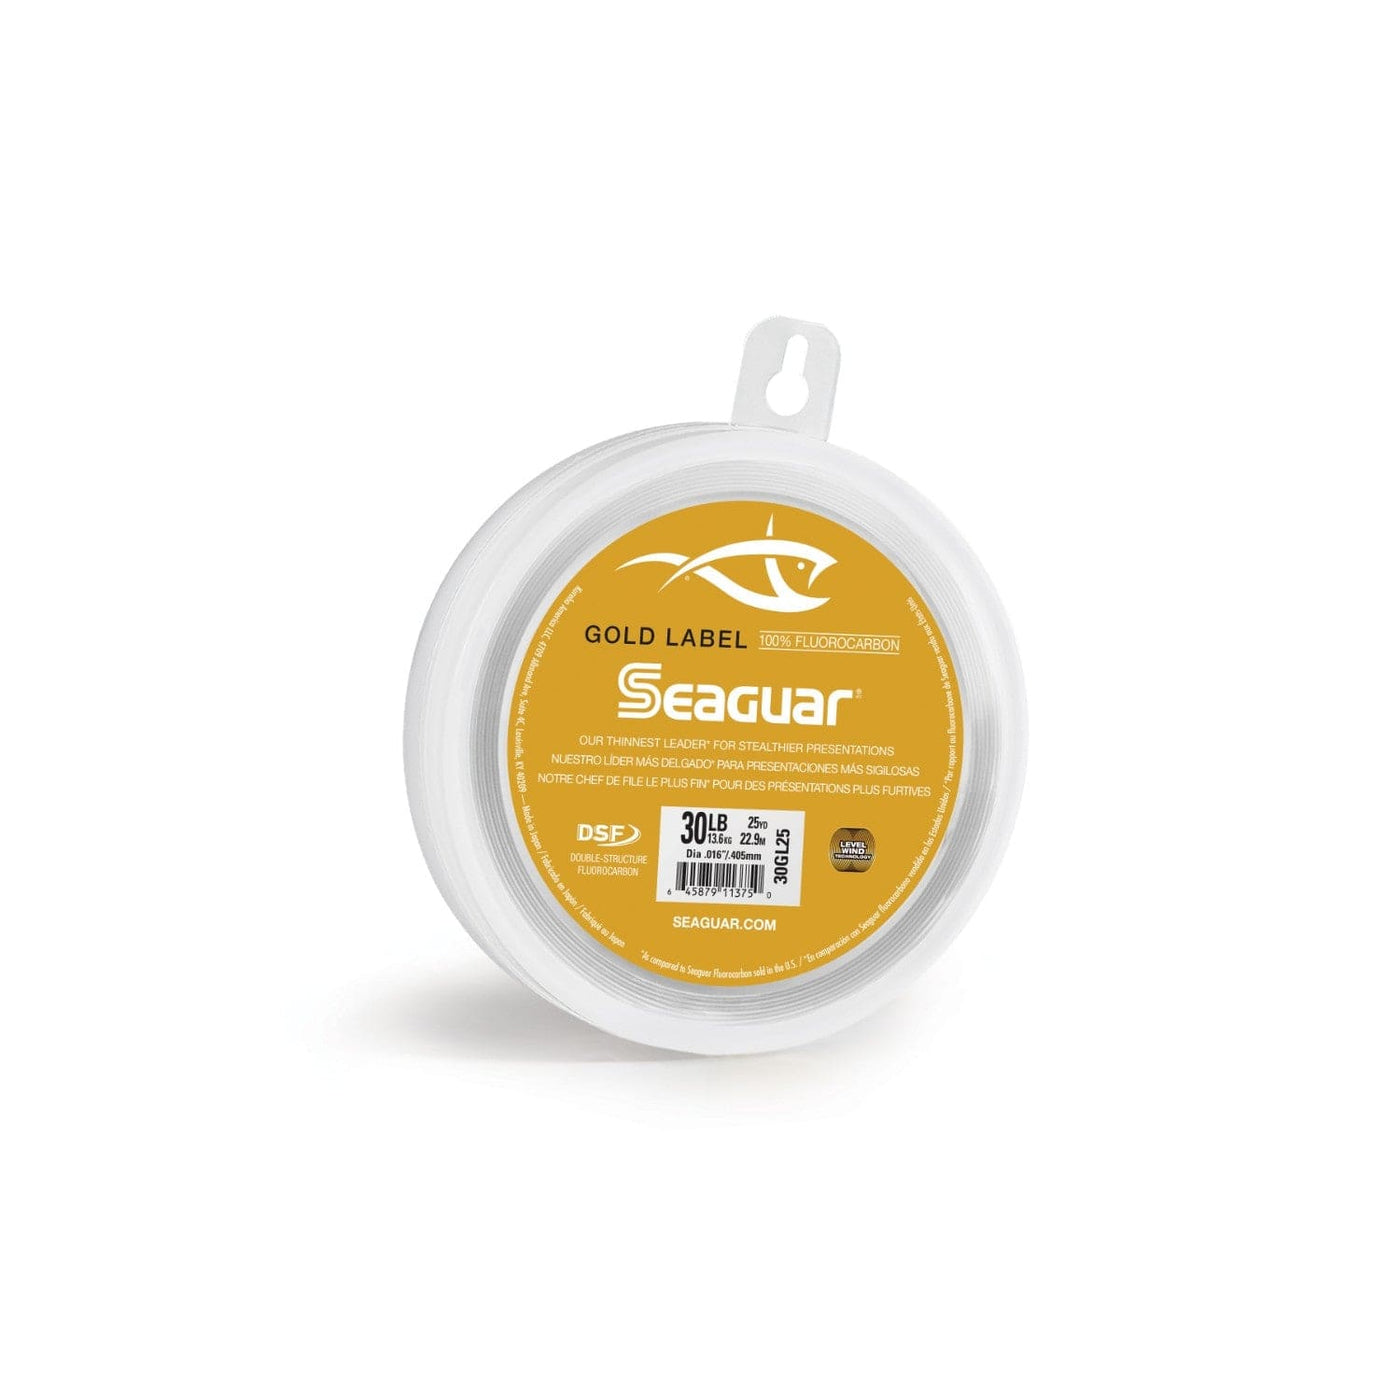 Seaguar Seaguar Gold Label 25 20GL25 Flourocarbon Leader Fishing